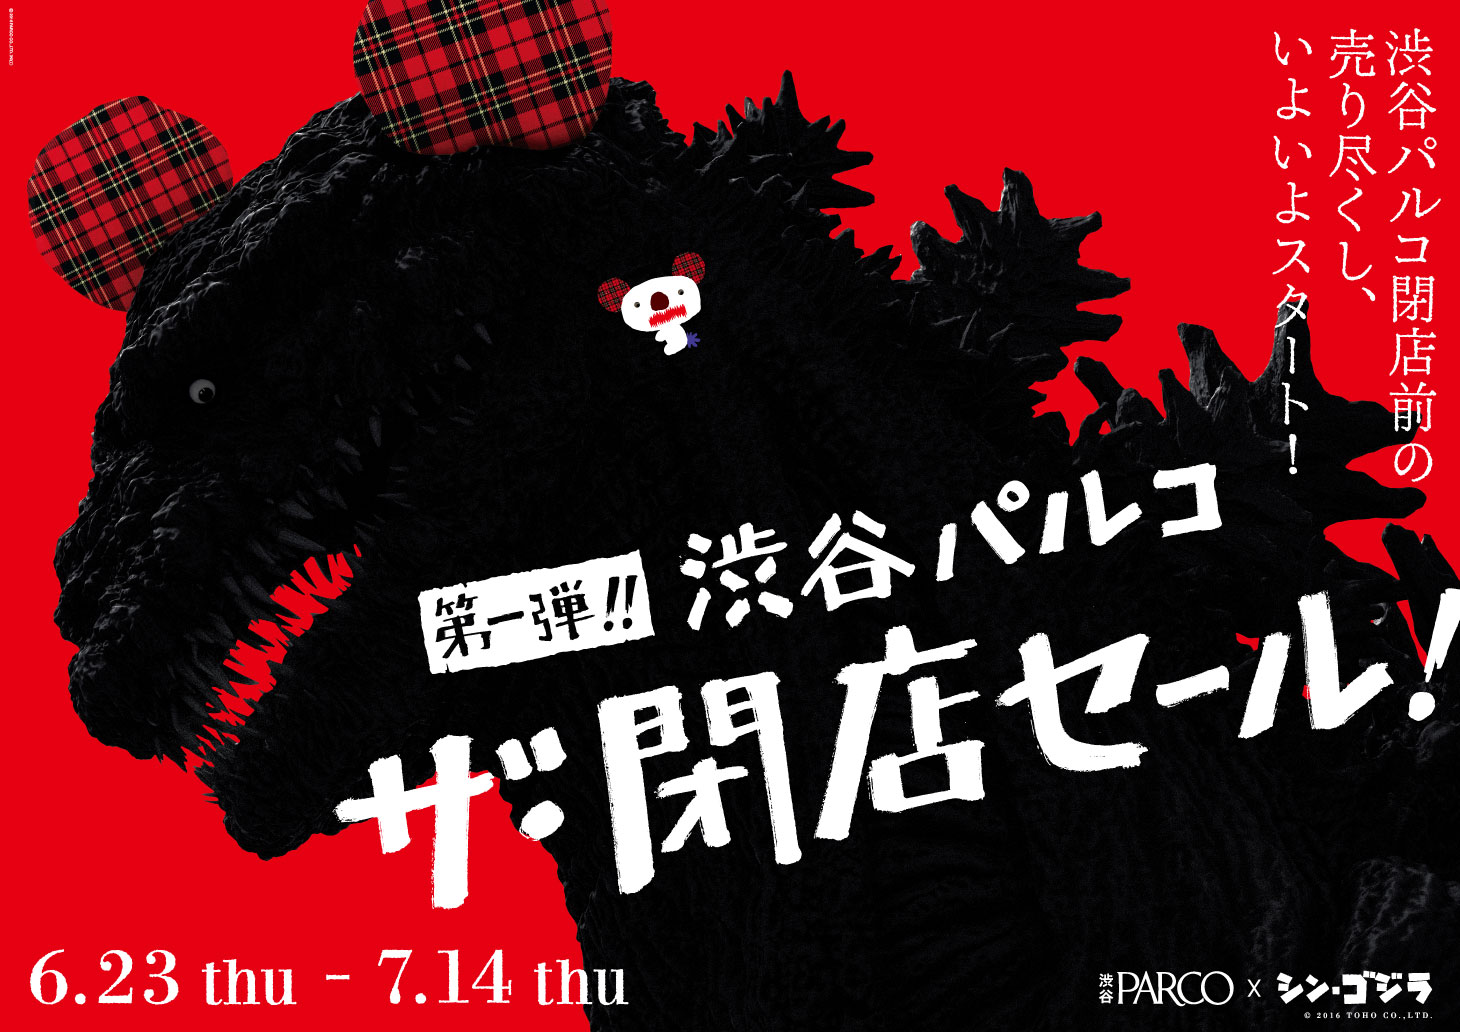 渋谷parco ザ 閉店セール 第一弾 6月23日 木 7月14日 木 開催 株式会社パルコのプレスリリース